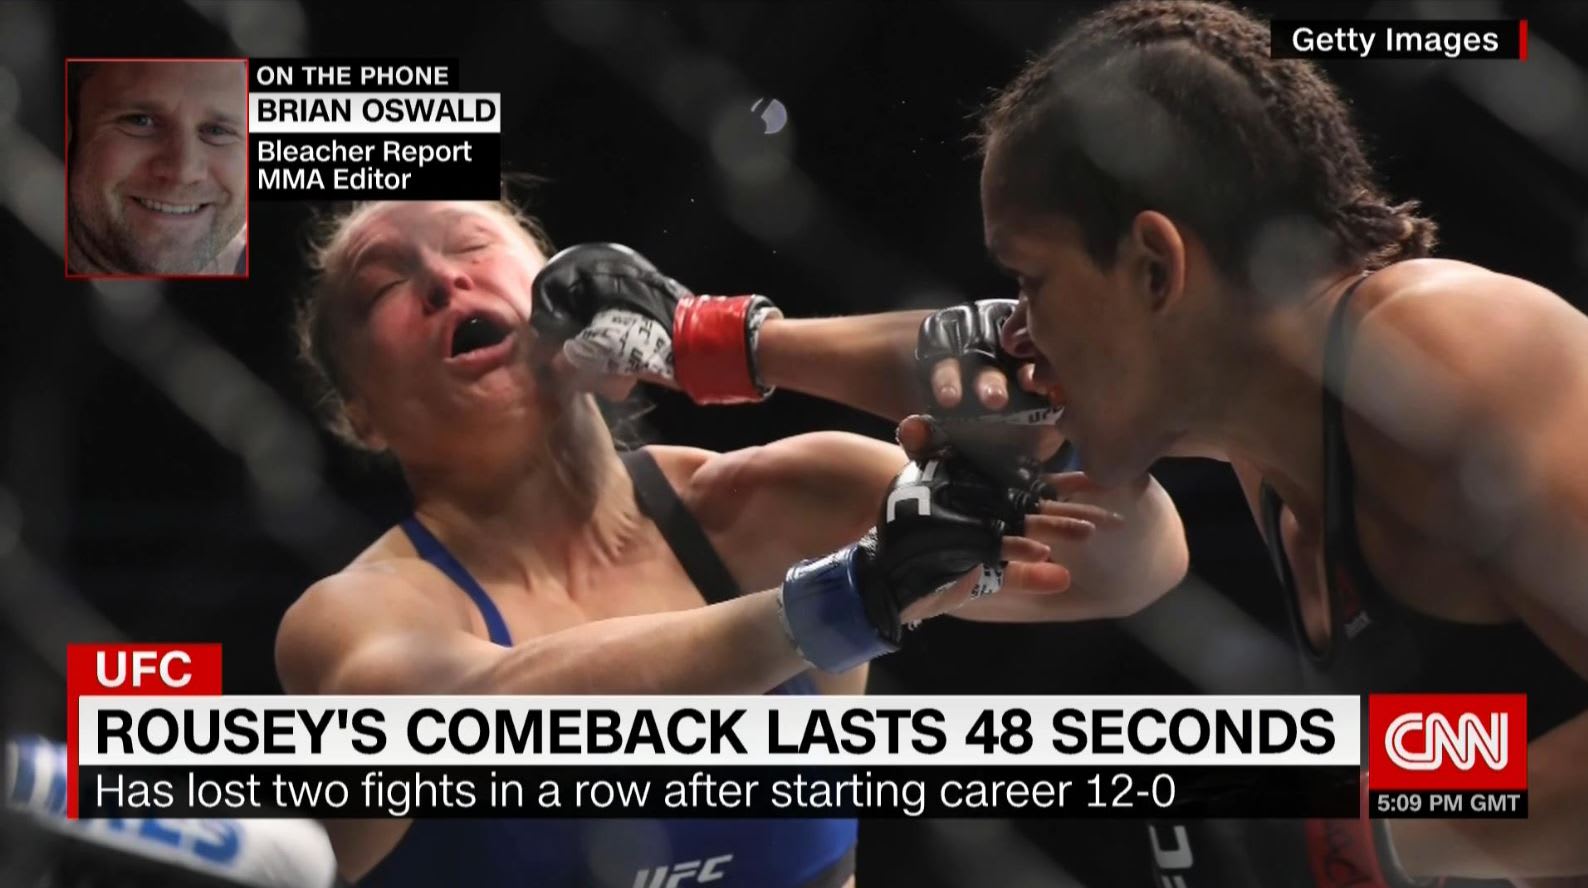 بعد غياب 13 شهراً.. حلم روندا راوزي بتعويض خسارتها لقب بطولة "UFC" للألعاب القتالية يتحطم في 48 ثانية